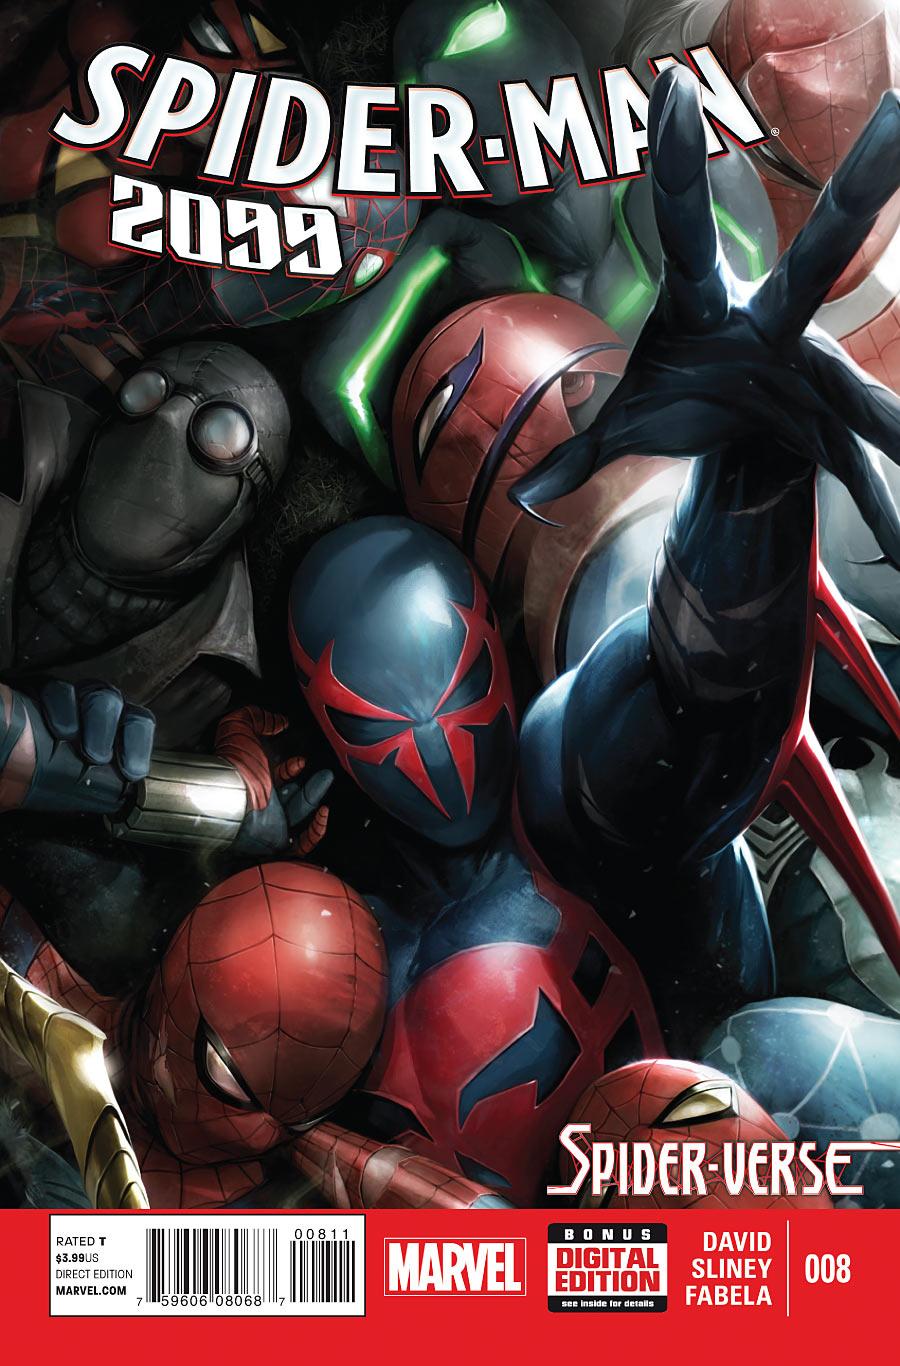 Spider-Man 2099 Vol. 2 #8